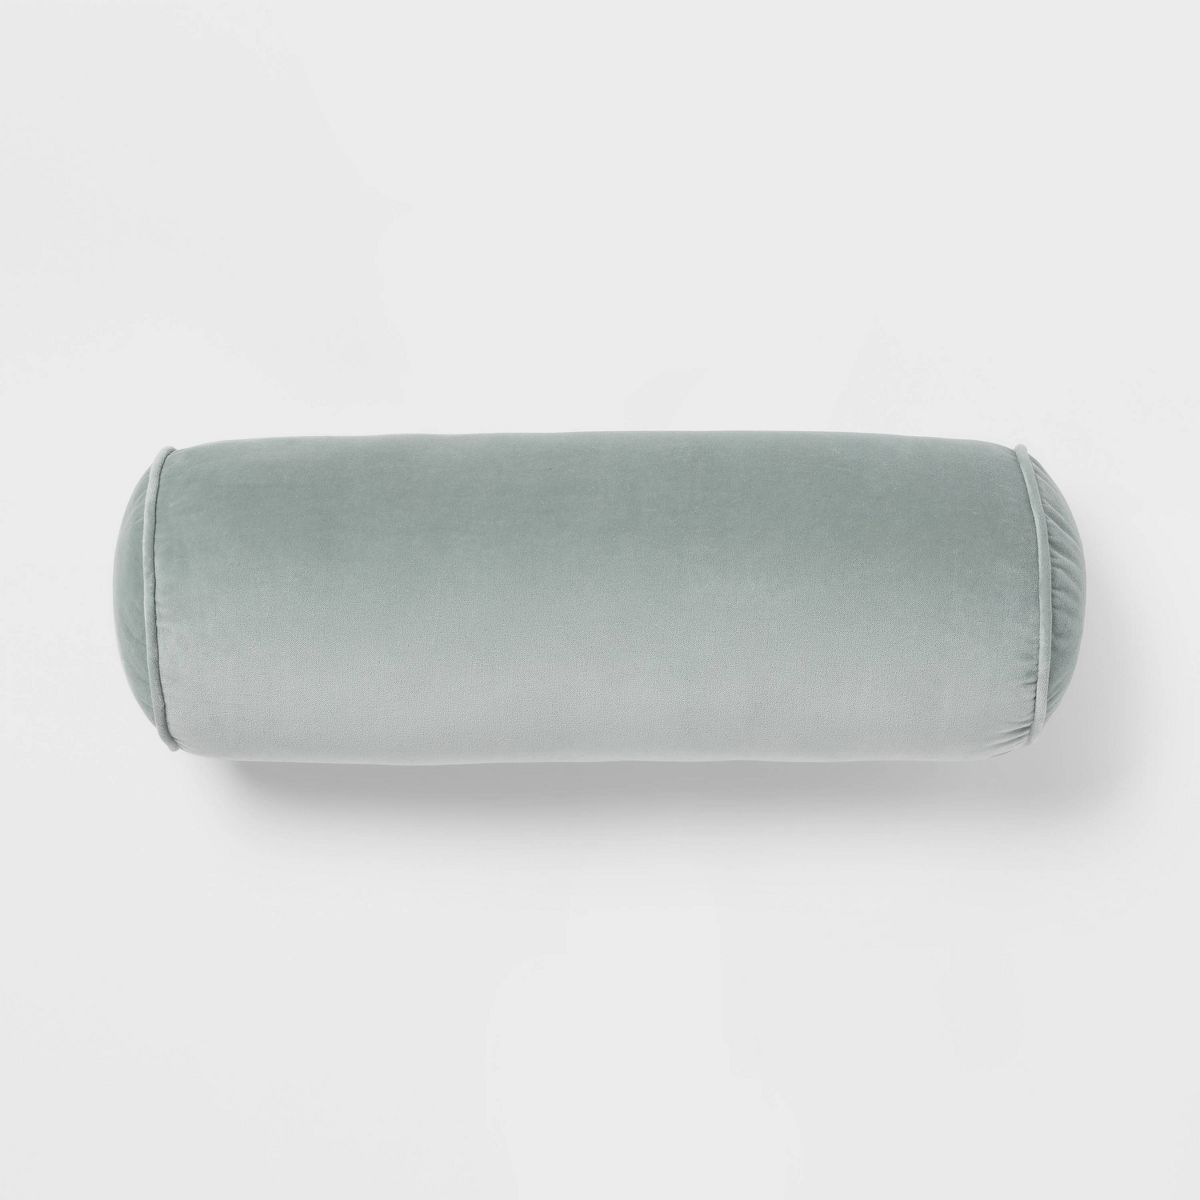 8"x22" Luxe Round Velvet Bolster Decorative Pillow Light Teal Green - Threshold™ | Target